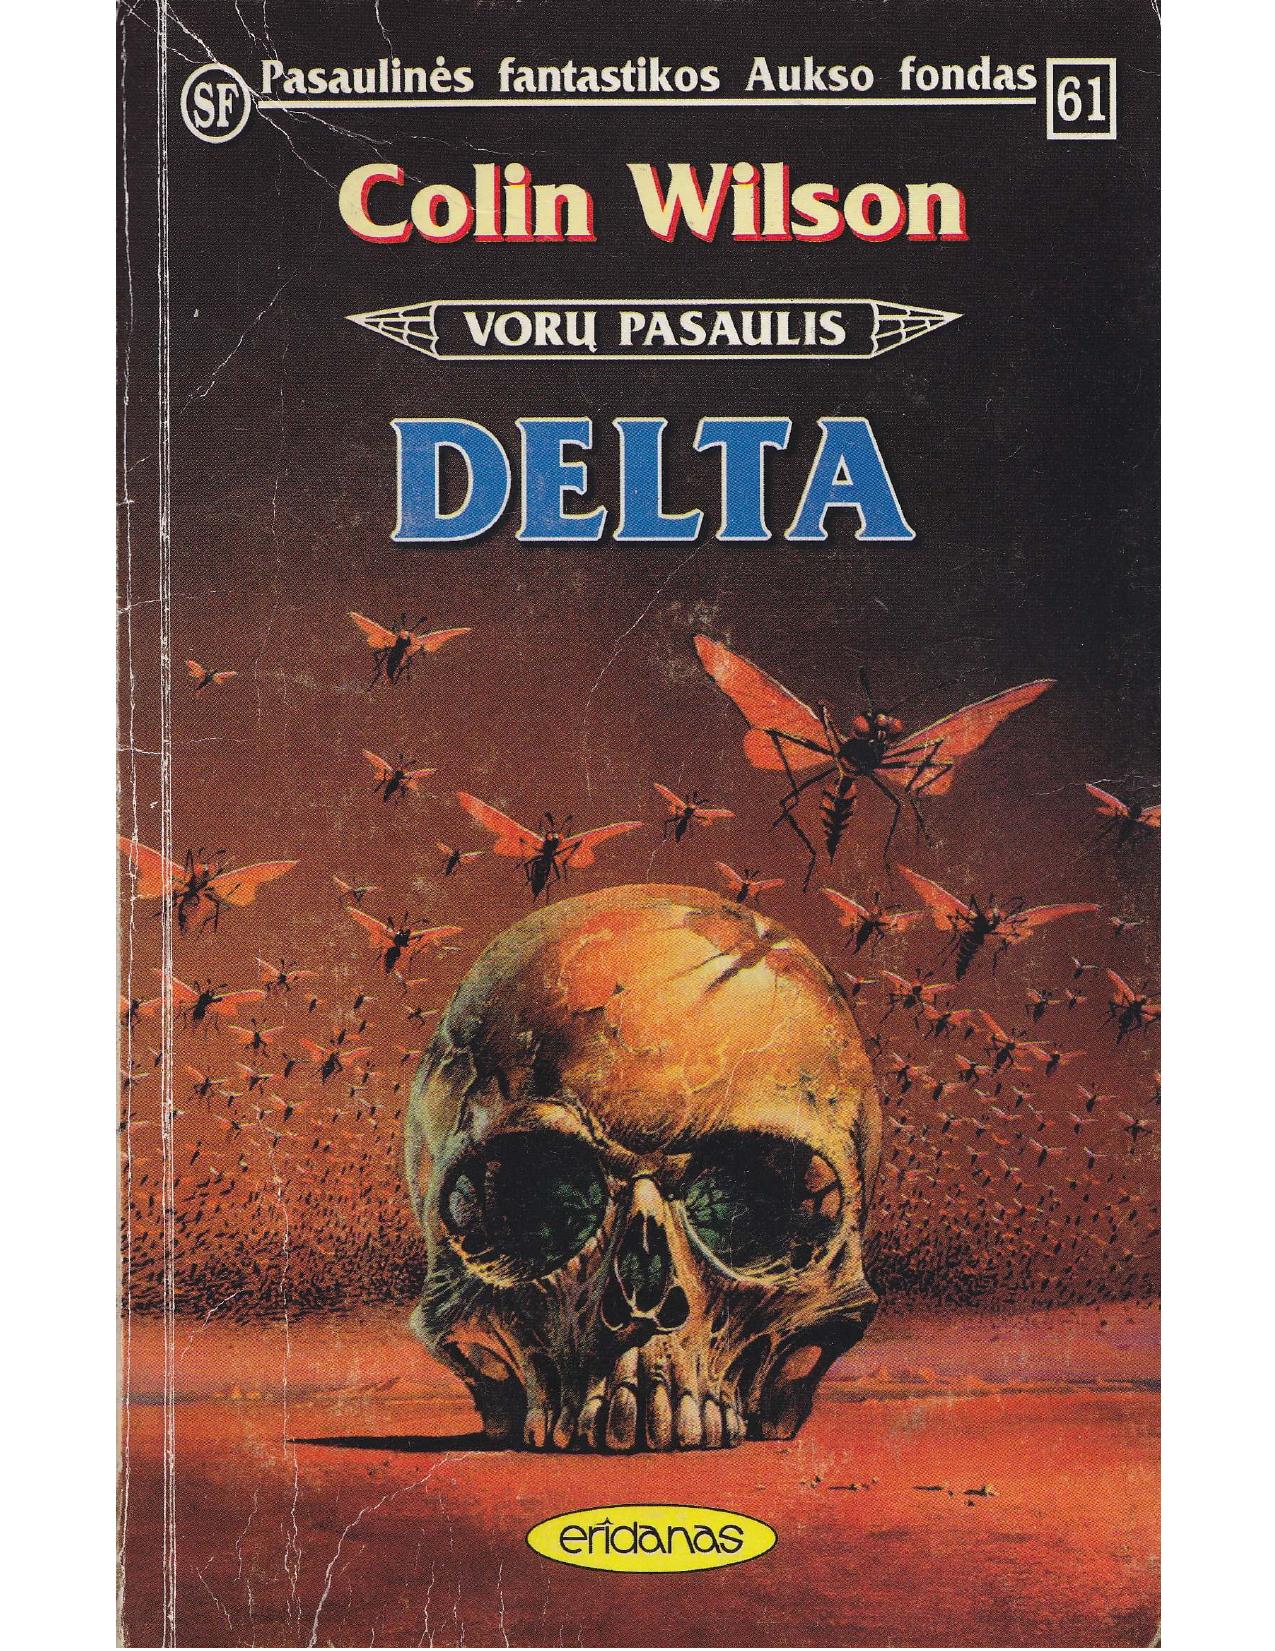 PFAF Nr.61 Colin Wilson - Delta (1996) LT - NRL